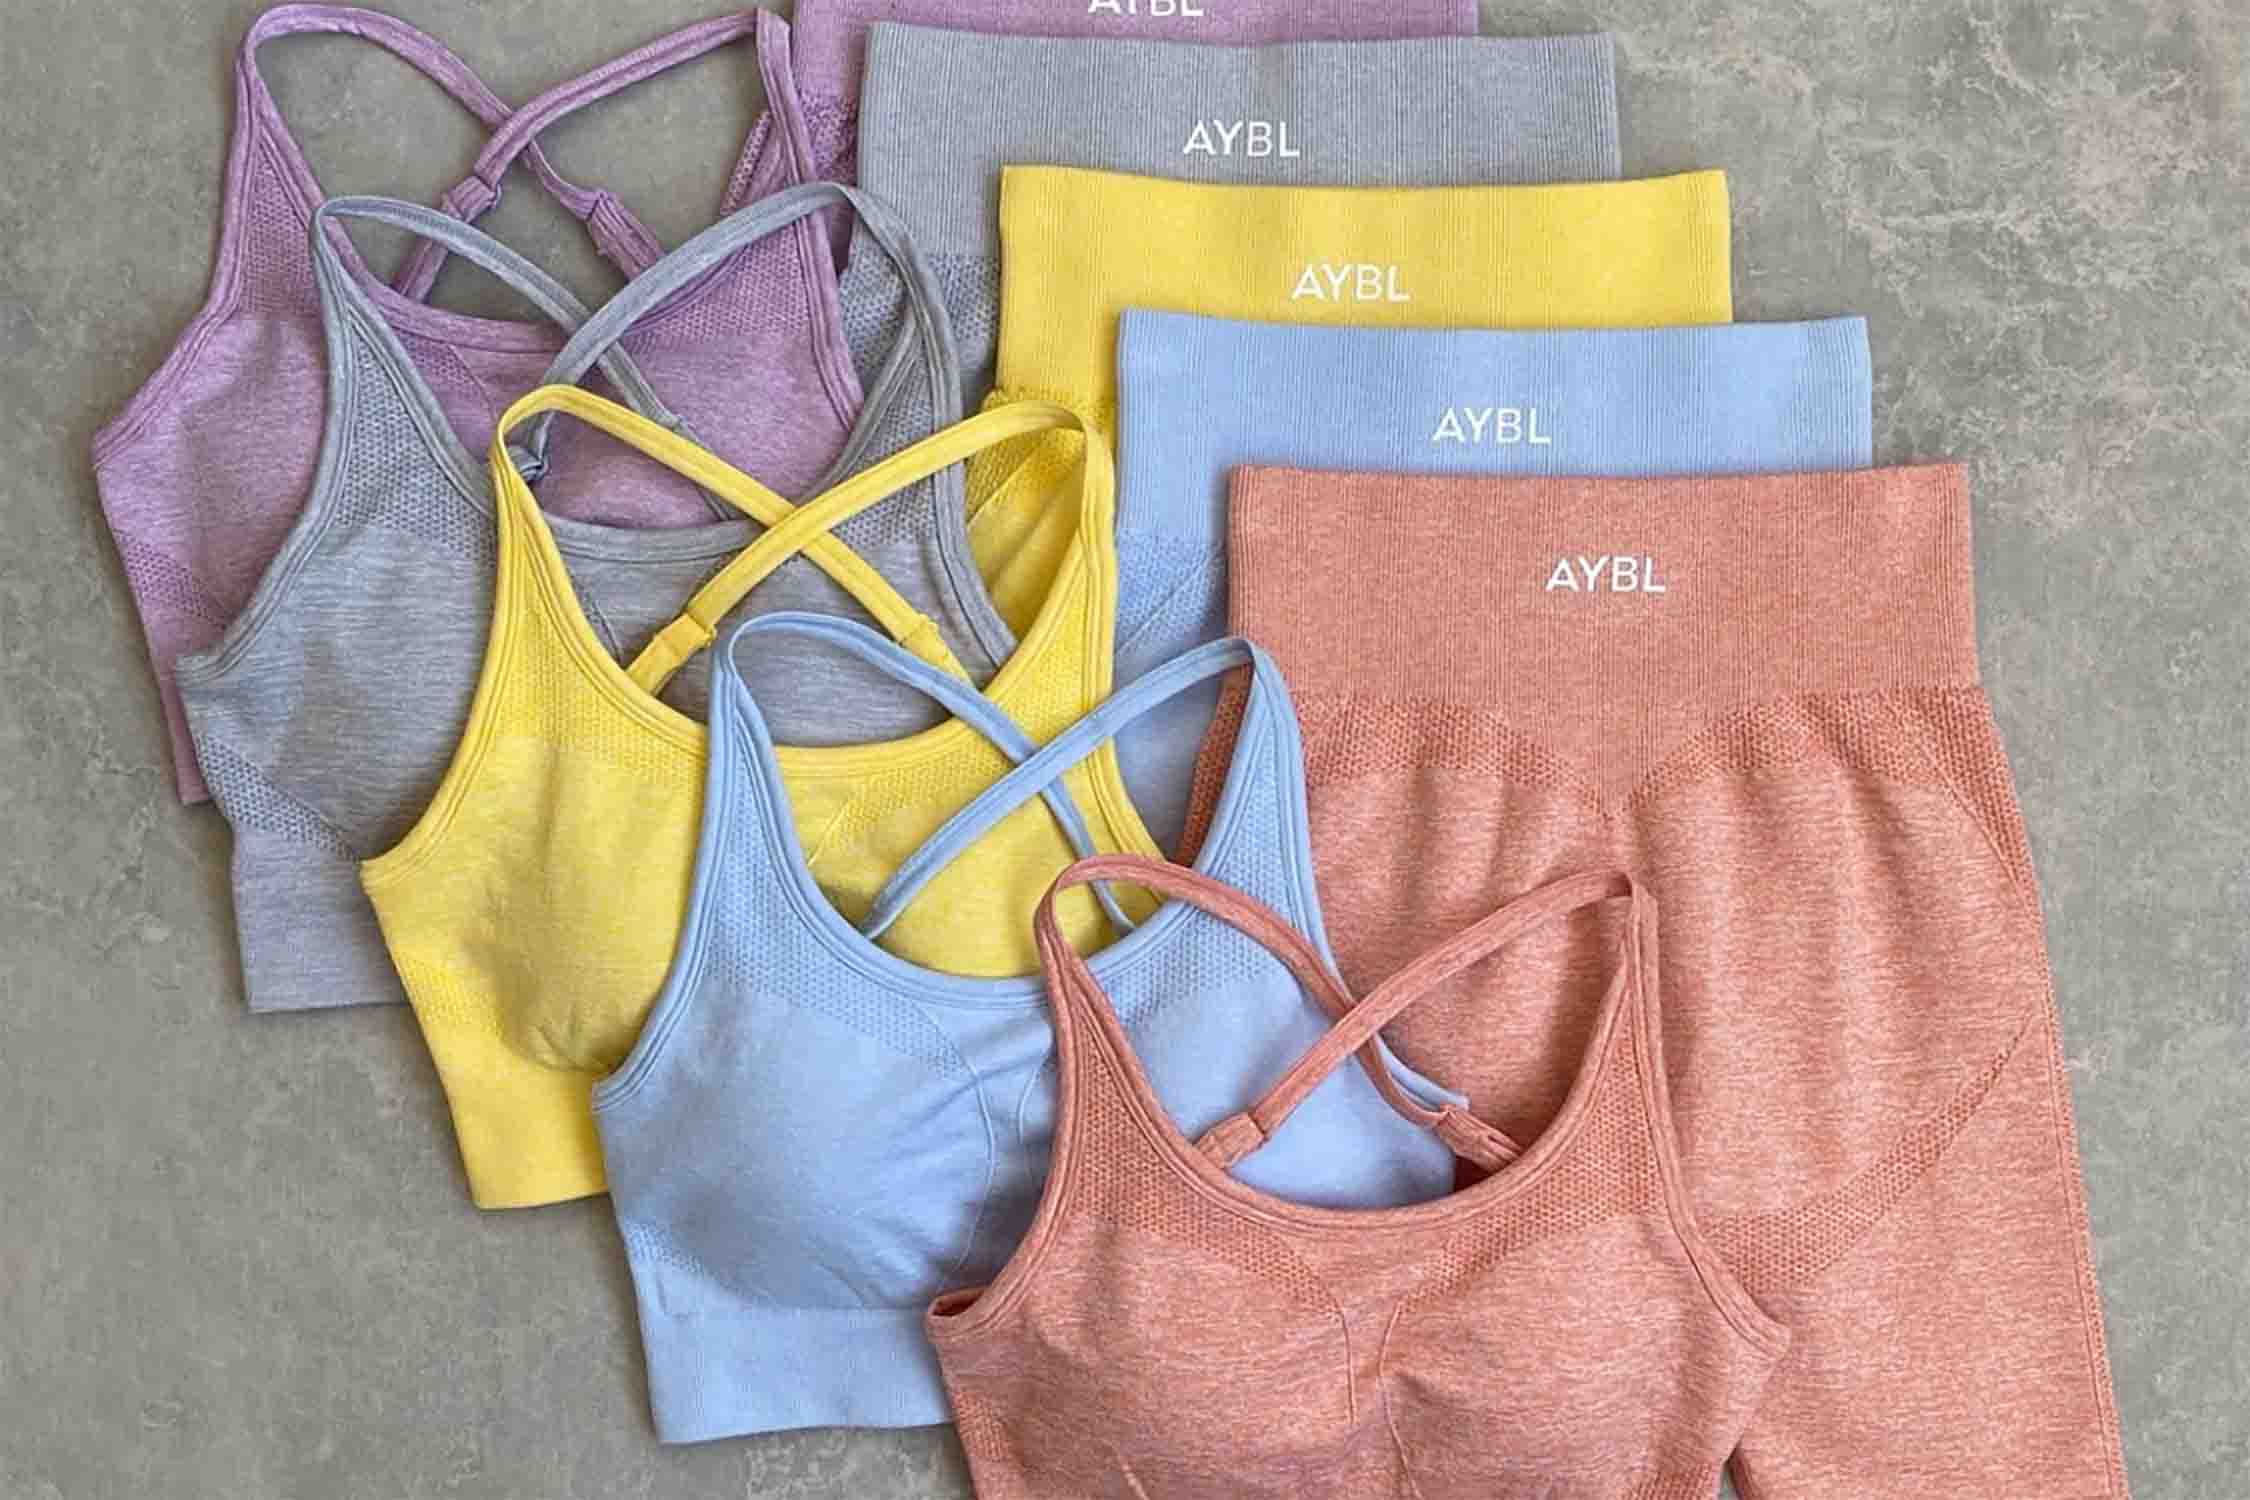 AYBL - Aybl Sports Bra on Designer Wardrobe